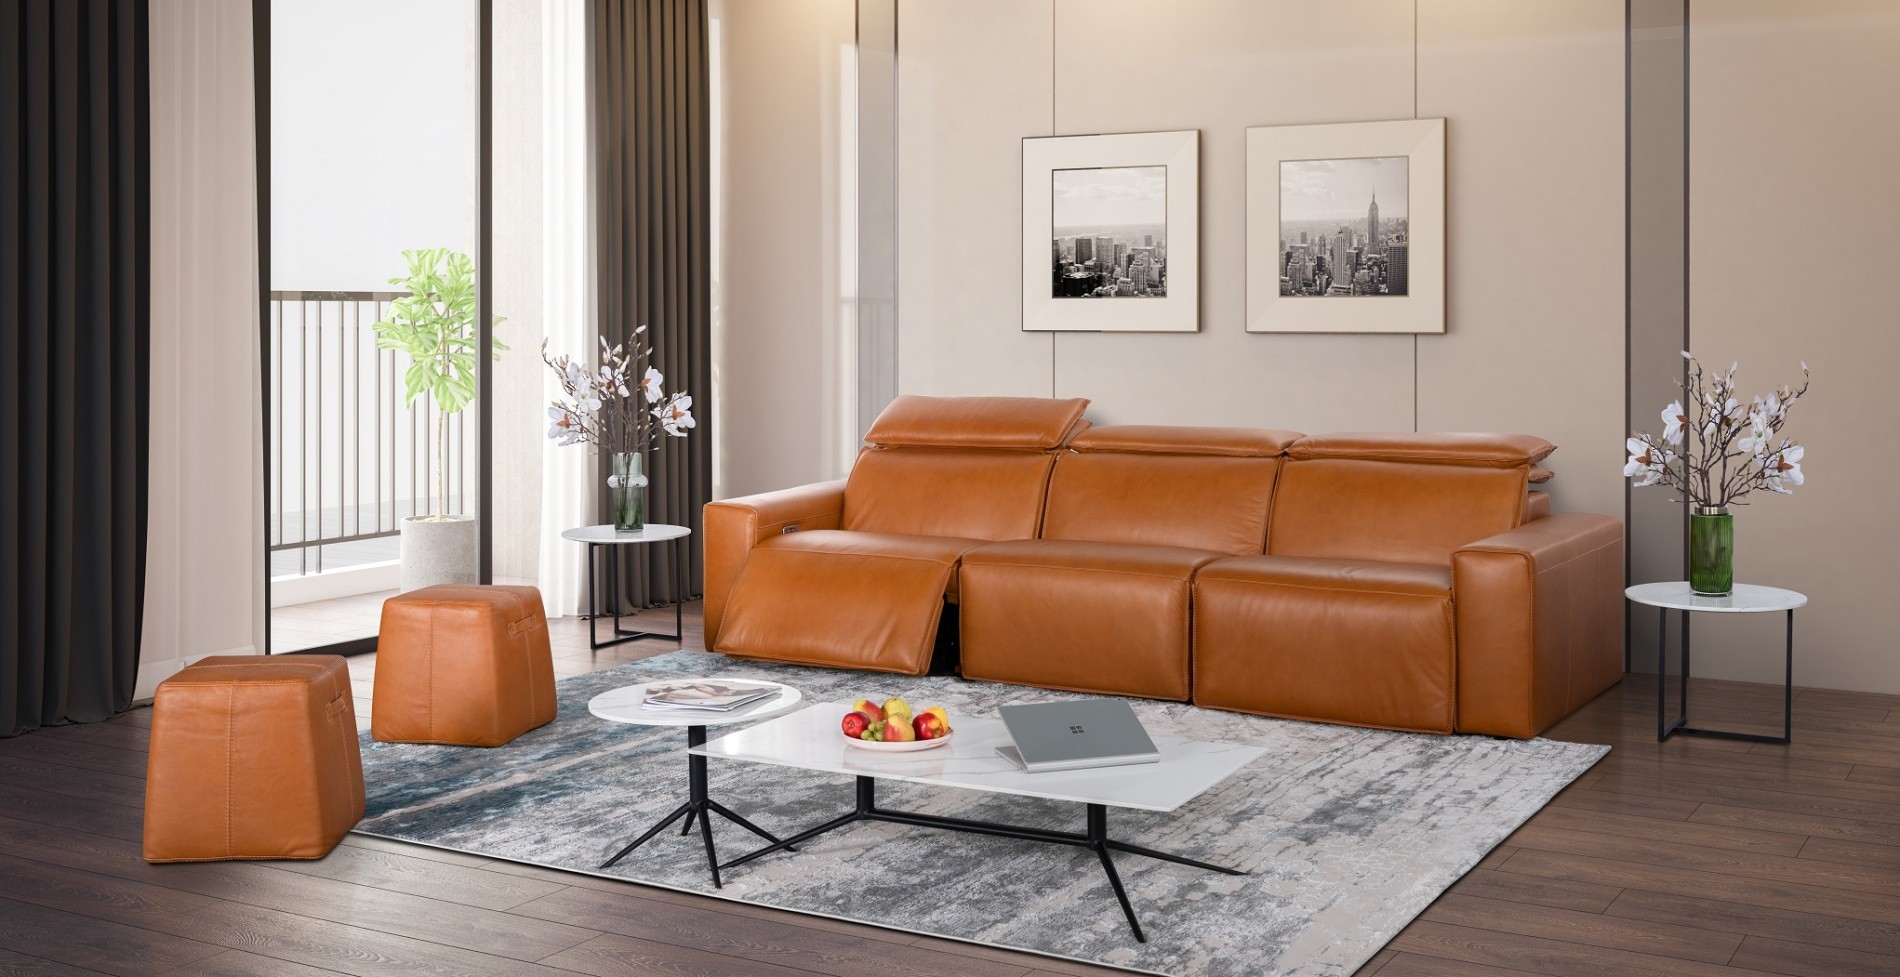 Tham khảo một số kích thước bàn sofa phù hợp với các không gian khác nhau